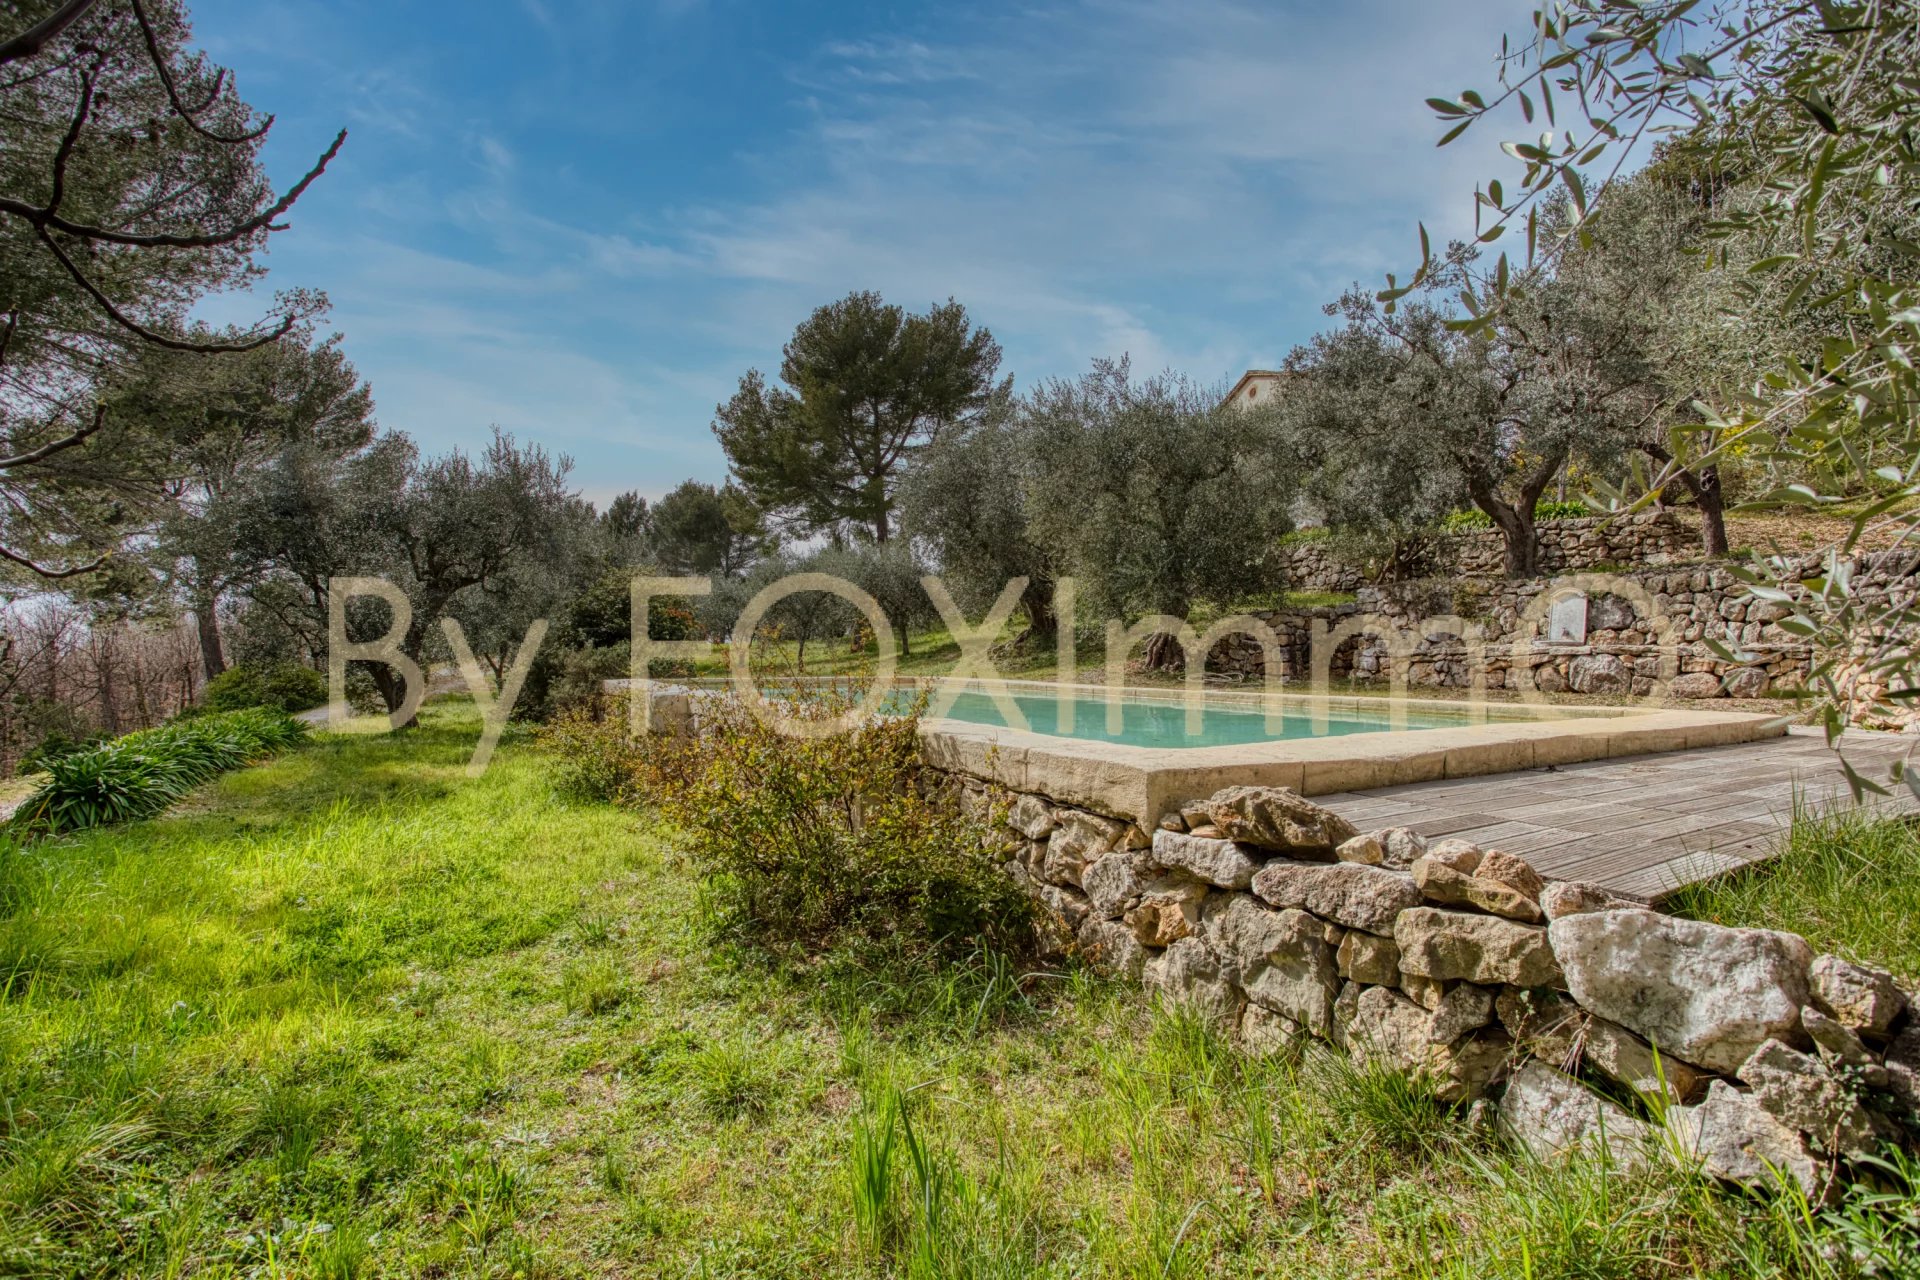 Costa Azzurra, vicino a Grasse e Cannes, magnifica villa, Bastide in assoluta pace e tranquillità, posizione dominante, vista panoramica, piscina, terreno di ulivi